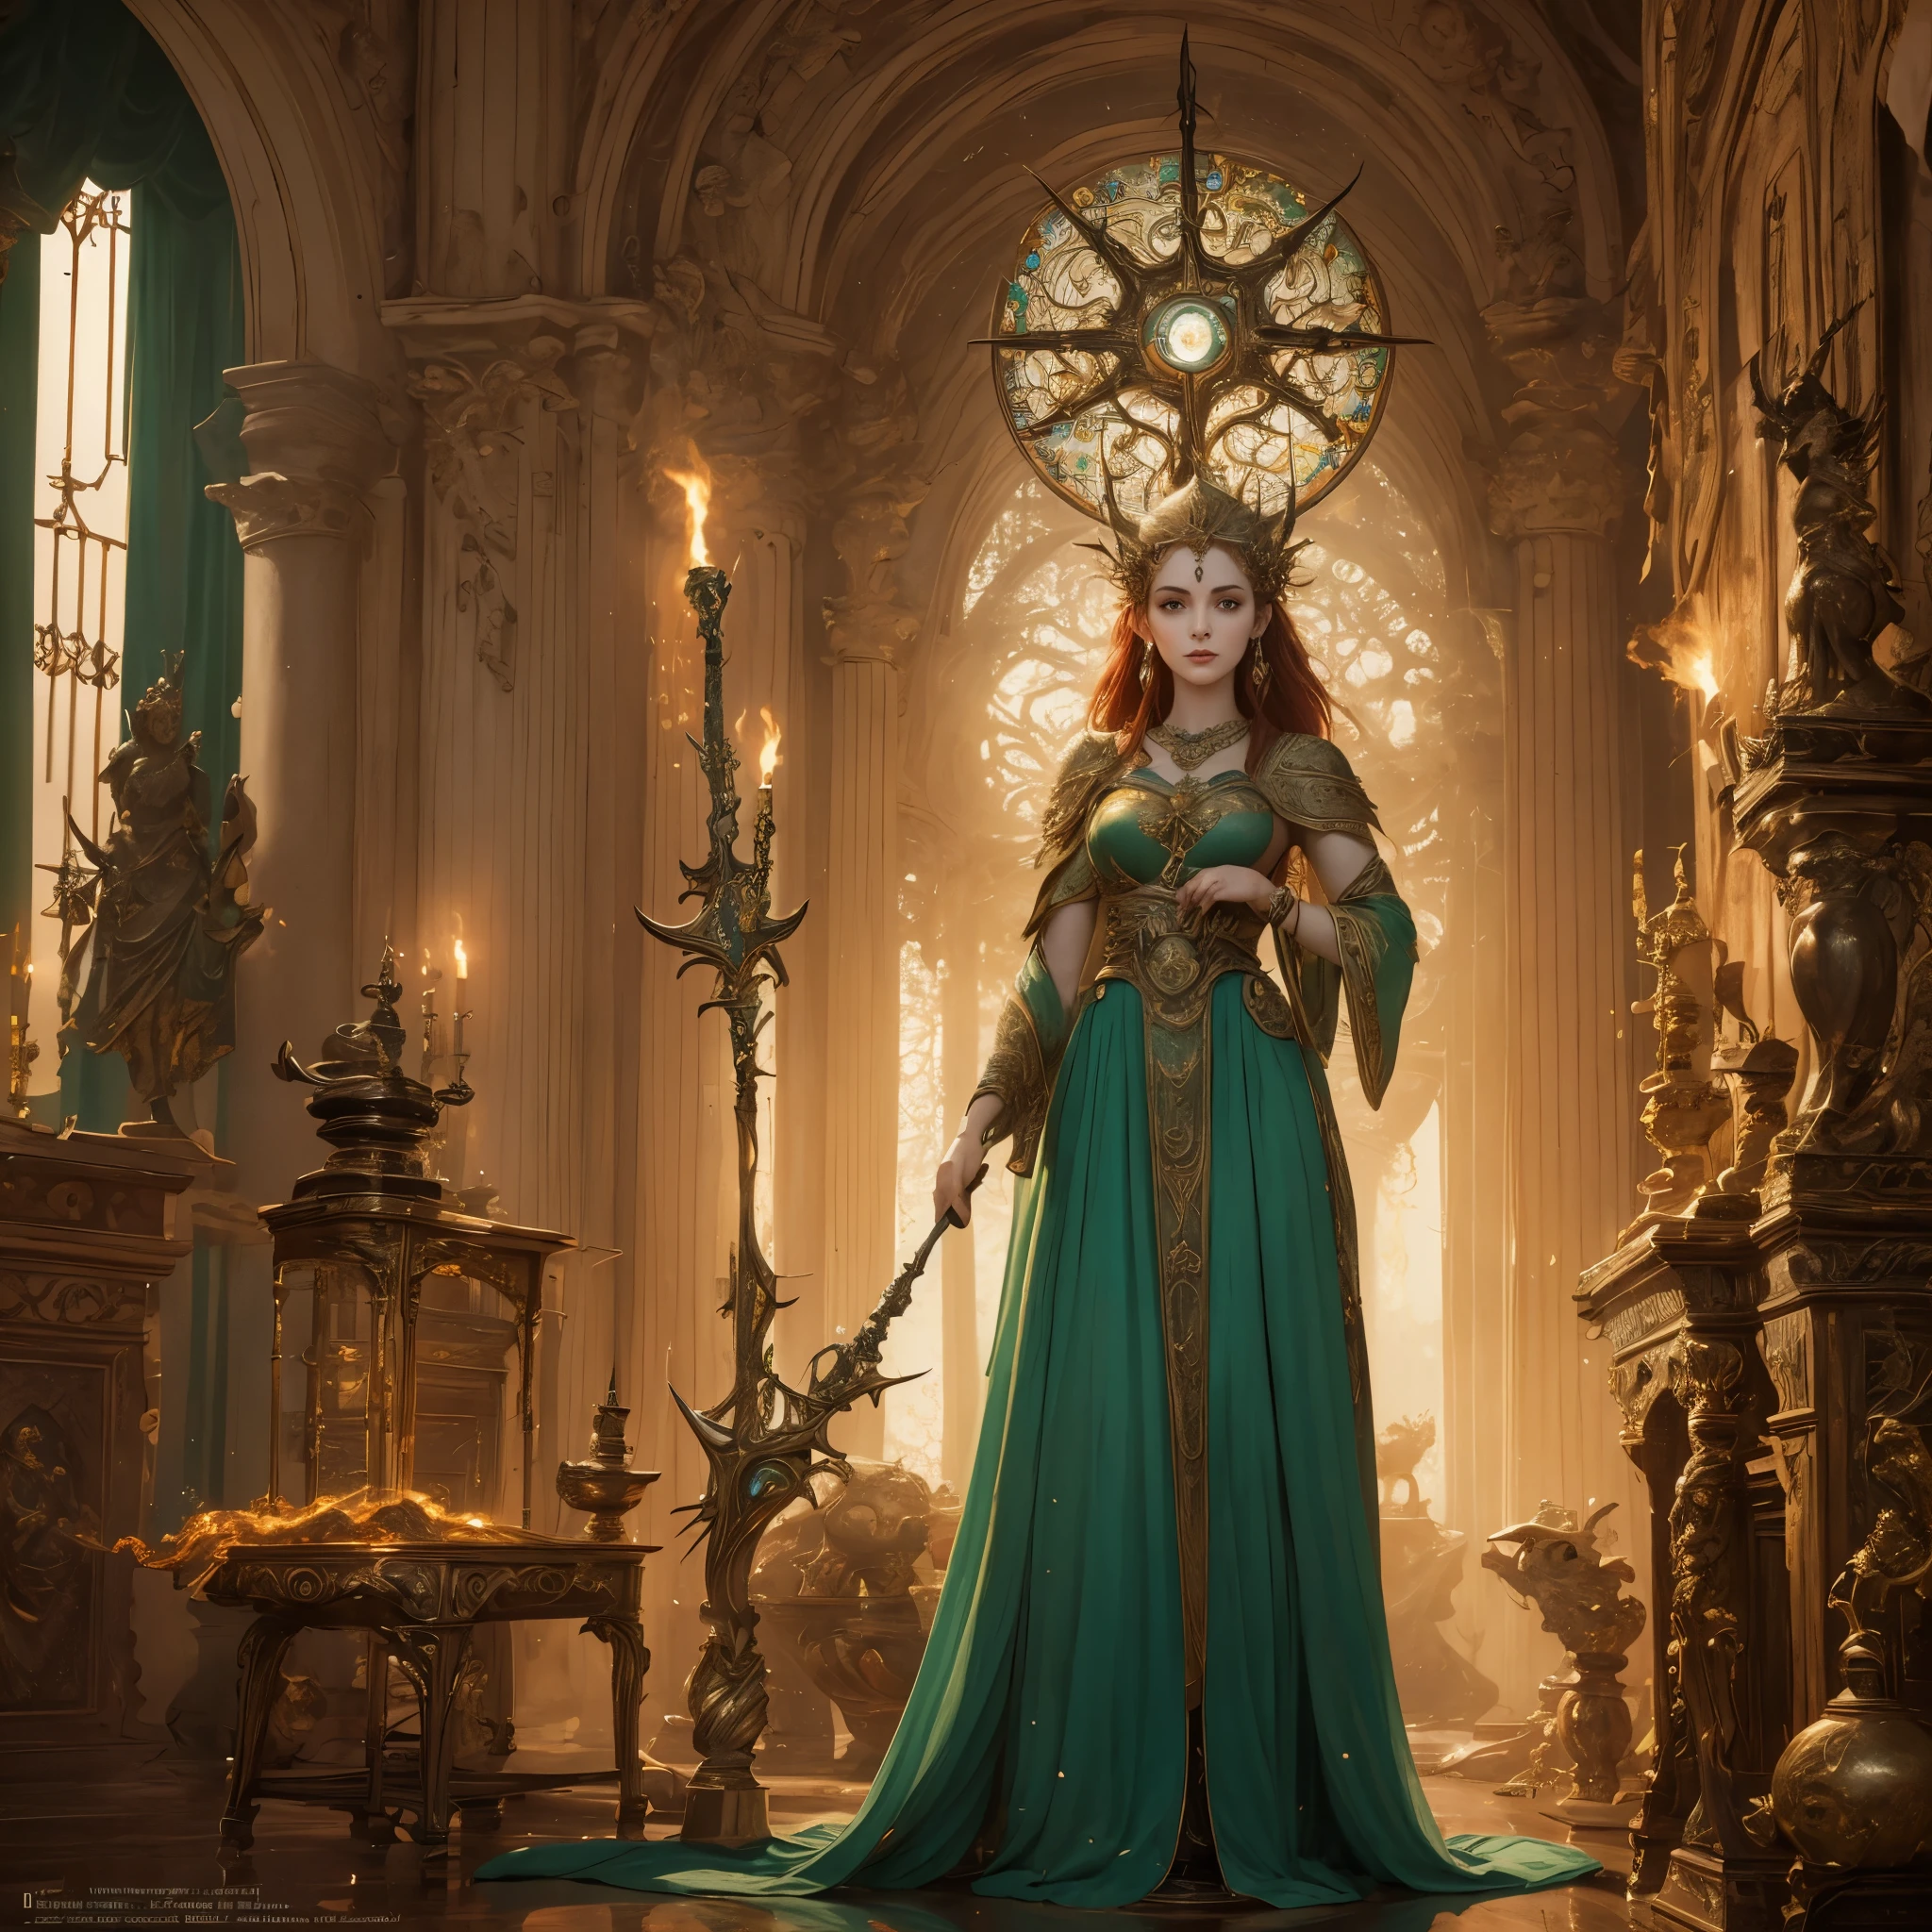 ブリジッド, 崇拝されるアイルランドの女神, 神聖な栄光の中で高く輝いて立っている. 彼女は鍛冶と鍛冶の女神として知られている, 創造性と職人技の象徴. 彼女の存在は魅惑的です, 尊敬と畏敬の念を呼び起こす. 流れるような燃えるような赤い髪と鋭い緑の目を持つ, 彼女はアイルランドの美の真髄を体現している. 鮮やかな緑のゆったりとしたガウンを着て, 複雑なケルト模様で飾られた, 彼女は優雅さと優雅さを醸し出しています. ブリジッド's hands, 繊細かつ力強い, 彼女の仕事道具を保持する, ハンマーと金床, 鍛冶の熟練の象徴. 彼女が立っている部屋は暖かい光に包まれている, 炉床の揺らめく炎から発せられる. 彼女が見つめる